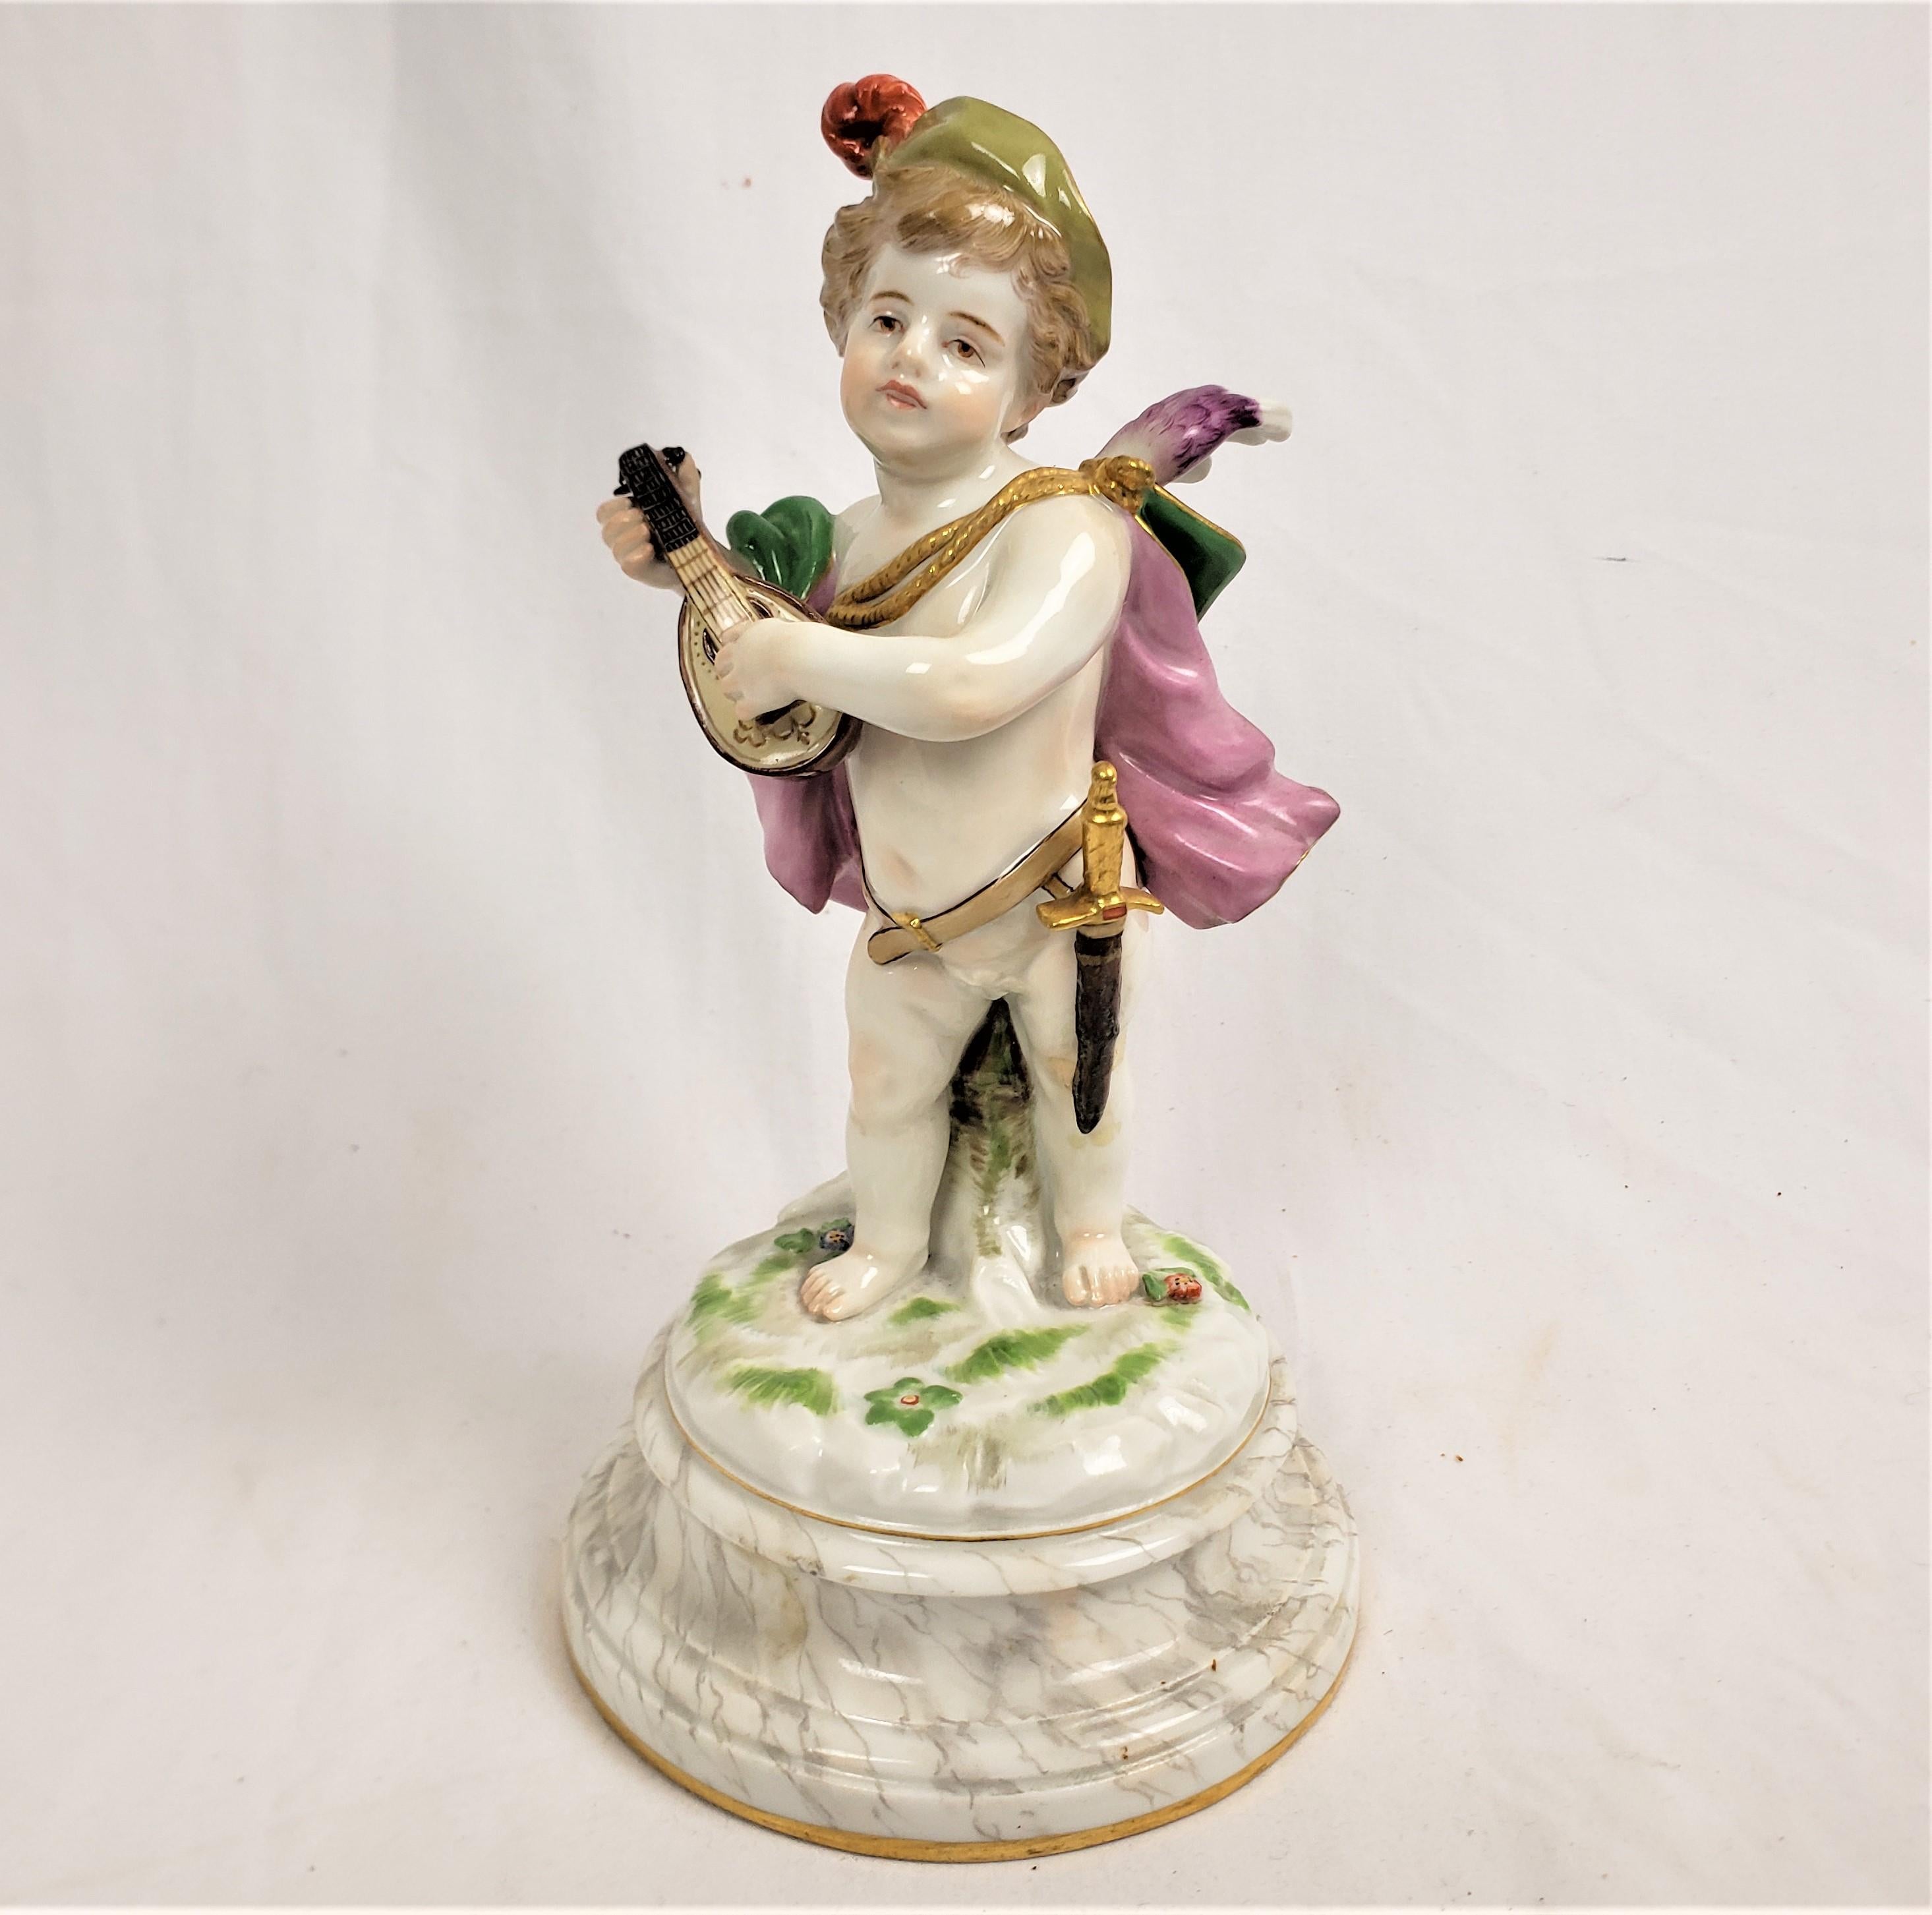 Cette figurine ancienne a été fabriquée par la célèbre usine de Meissen en Allemagne vers 1850 dans le style romantique de Dresde. La figurine est composée de leur porcelaine en pâte et représente un jeune enfant portant une cape, un bonnet et une